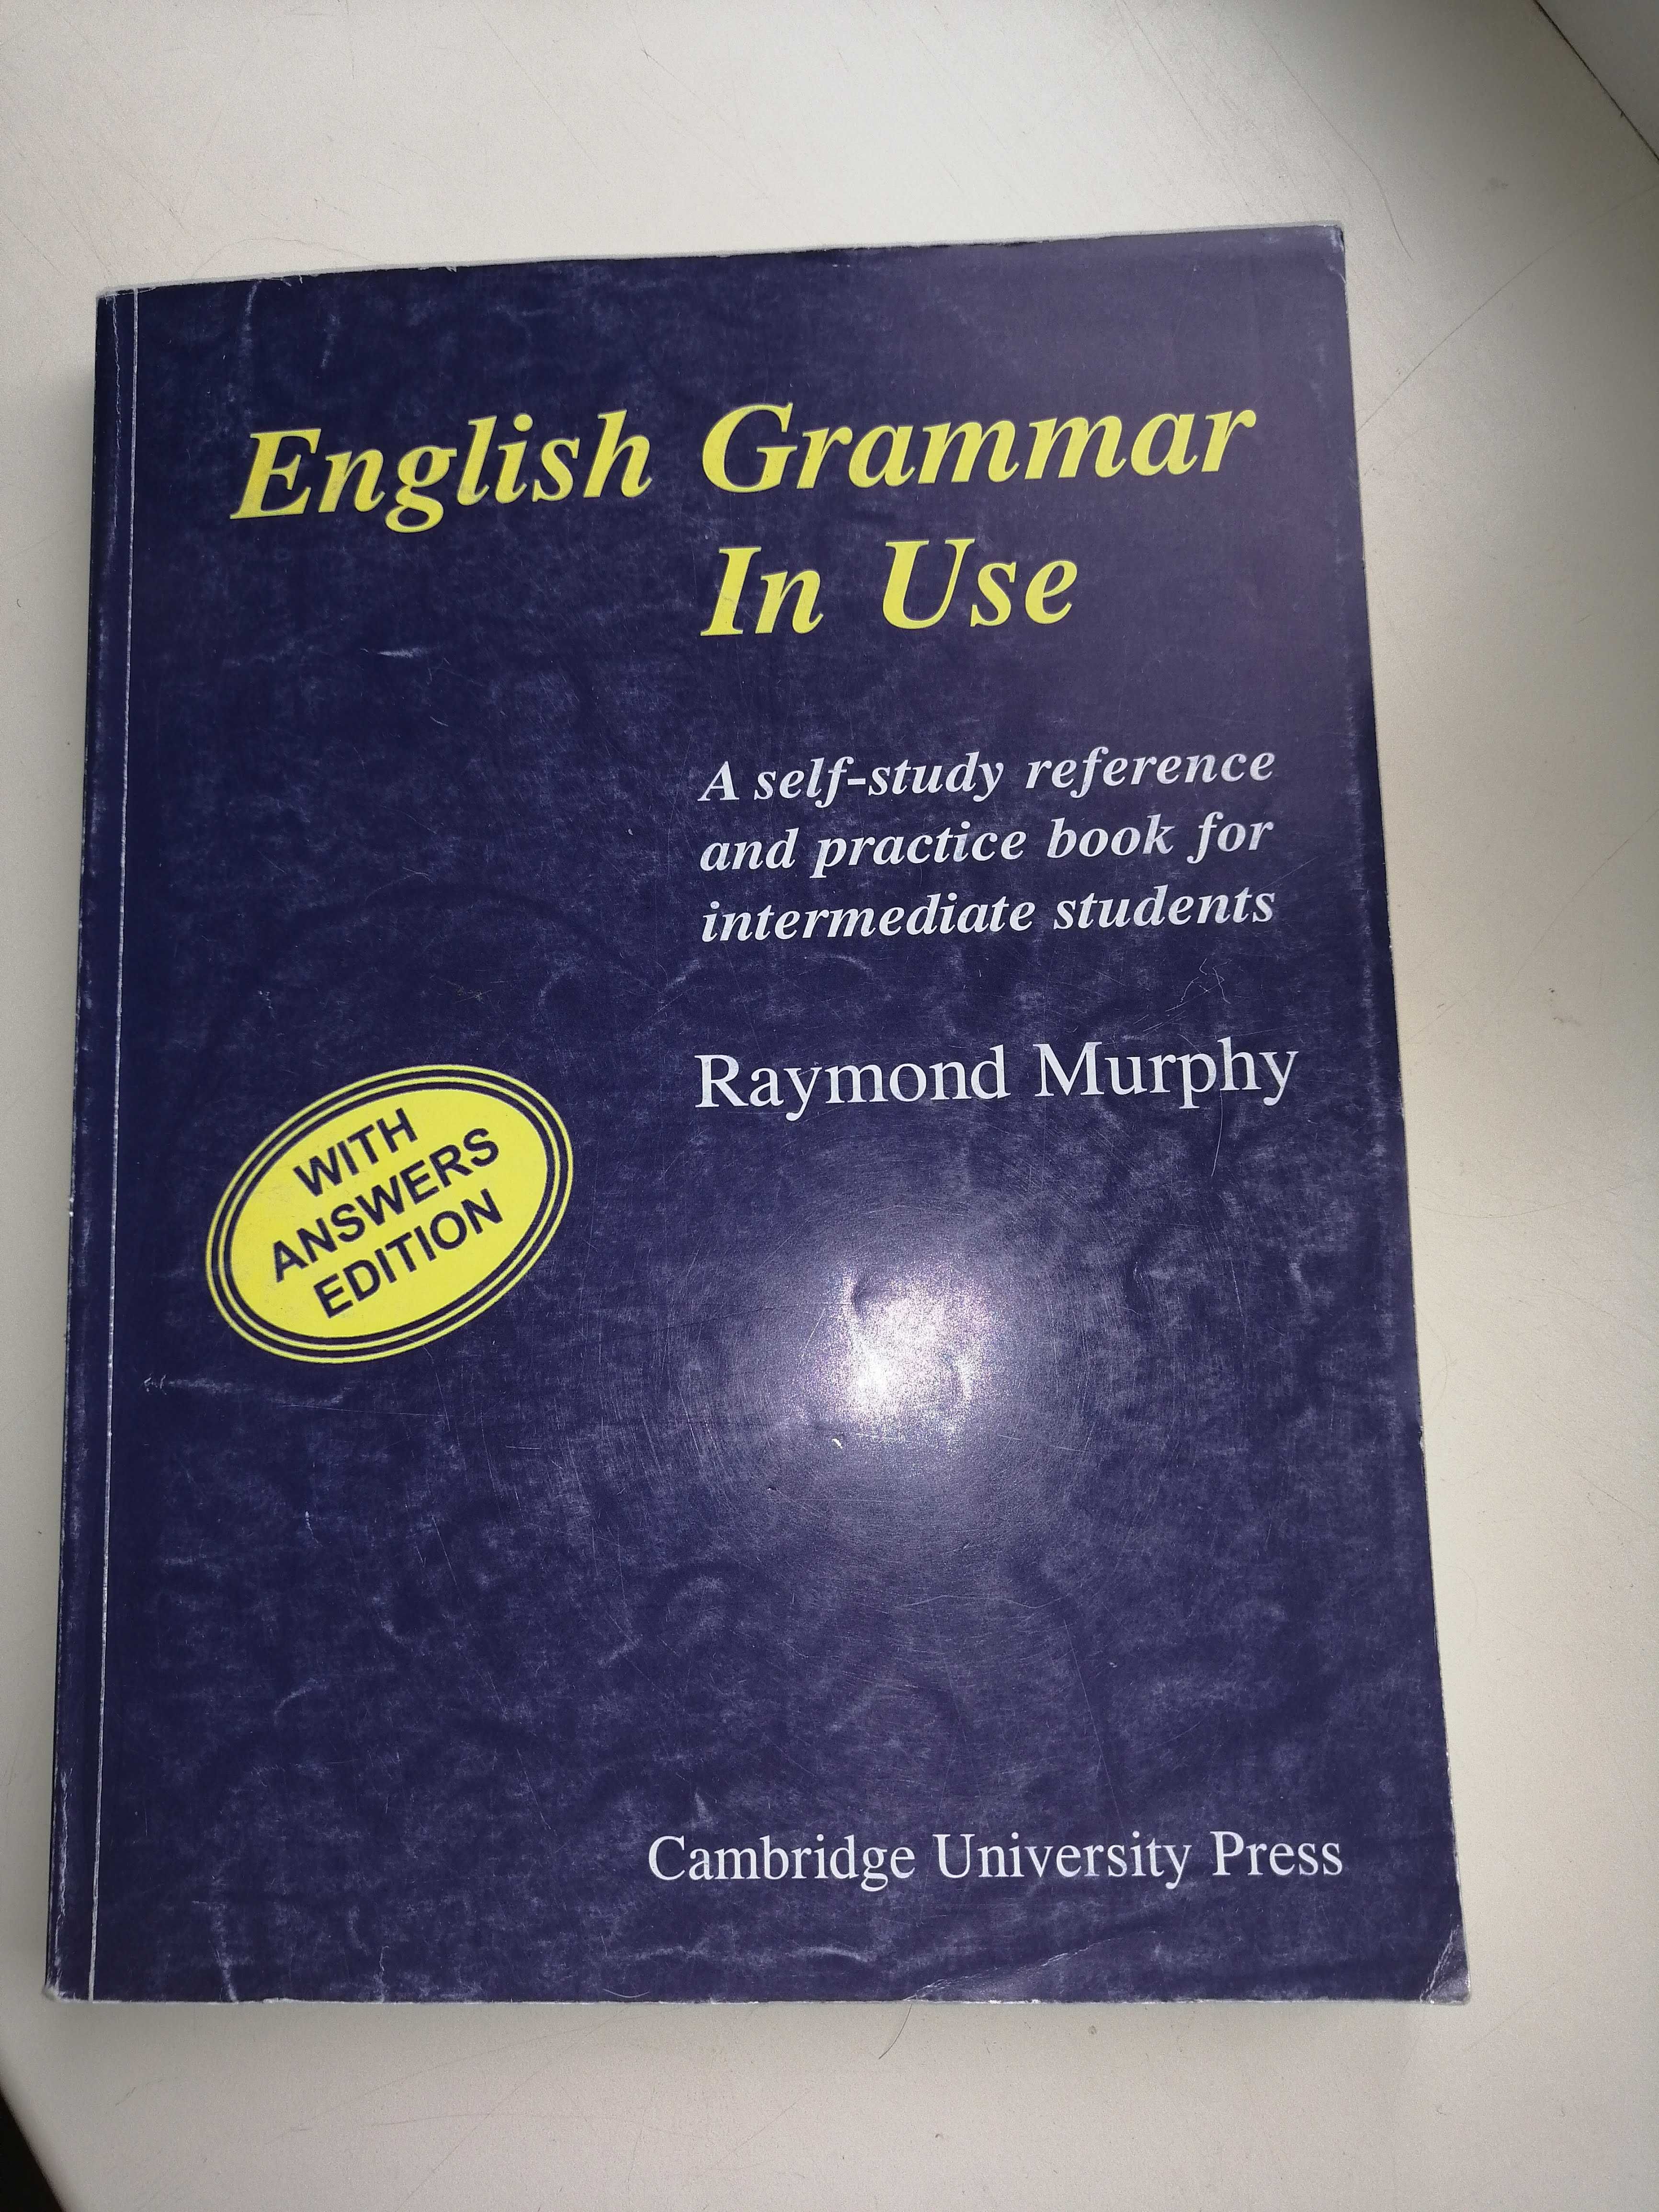 Підручник з граматики англ.мови English Grammar in Use